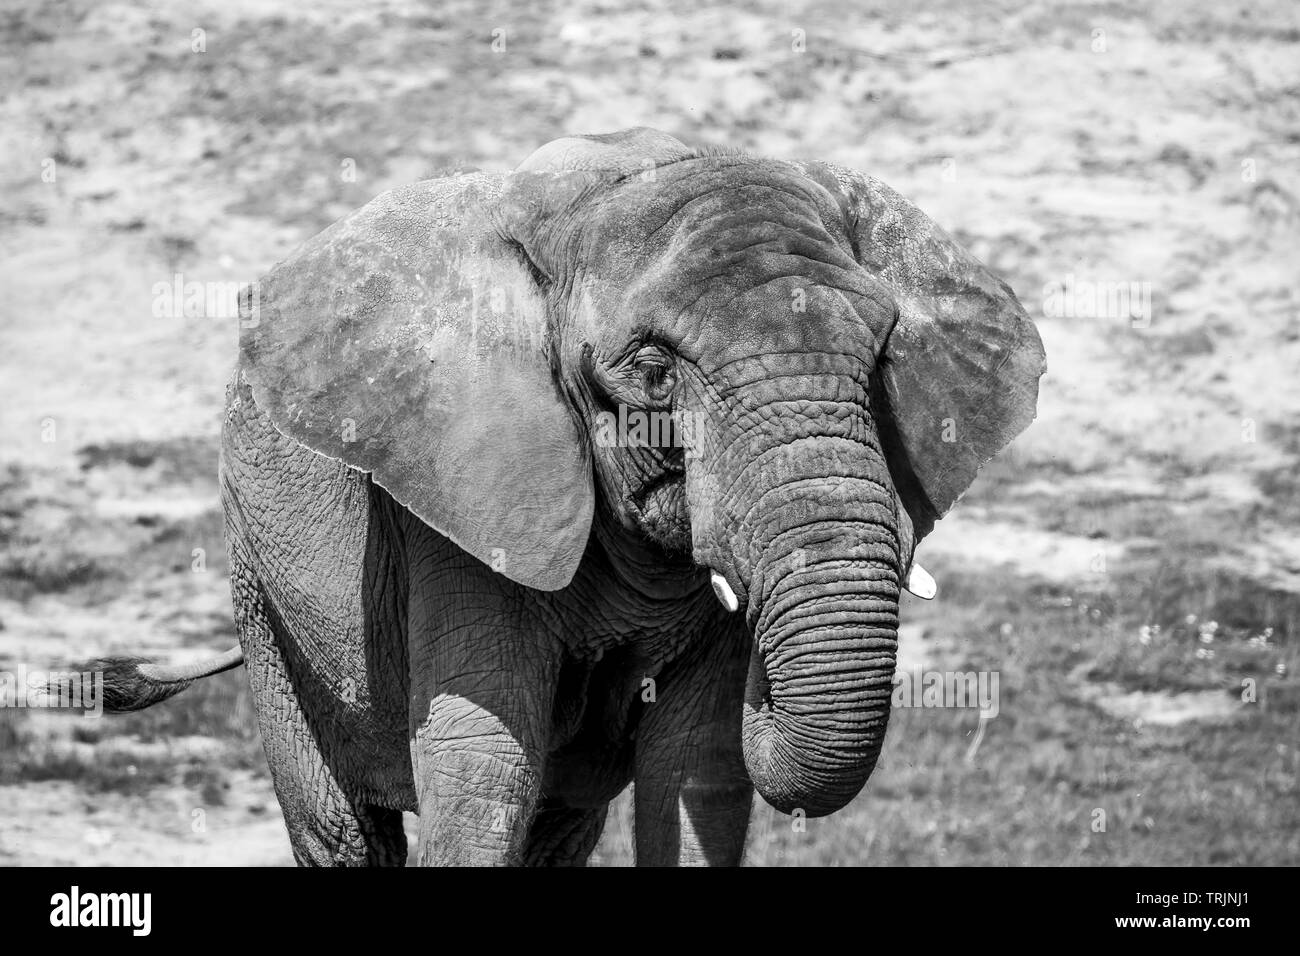 Fotografía animal en blanco y negro: Vista frontal de cerca del elefante africano aislado de la vaca (Loxodonta africana) en cautiverio al aire libre bajo el sol Foto de stock